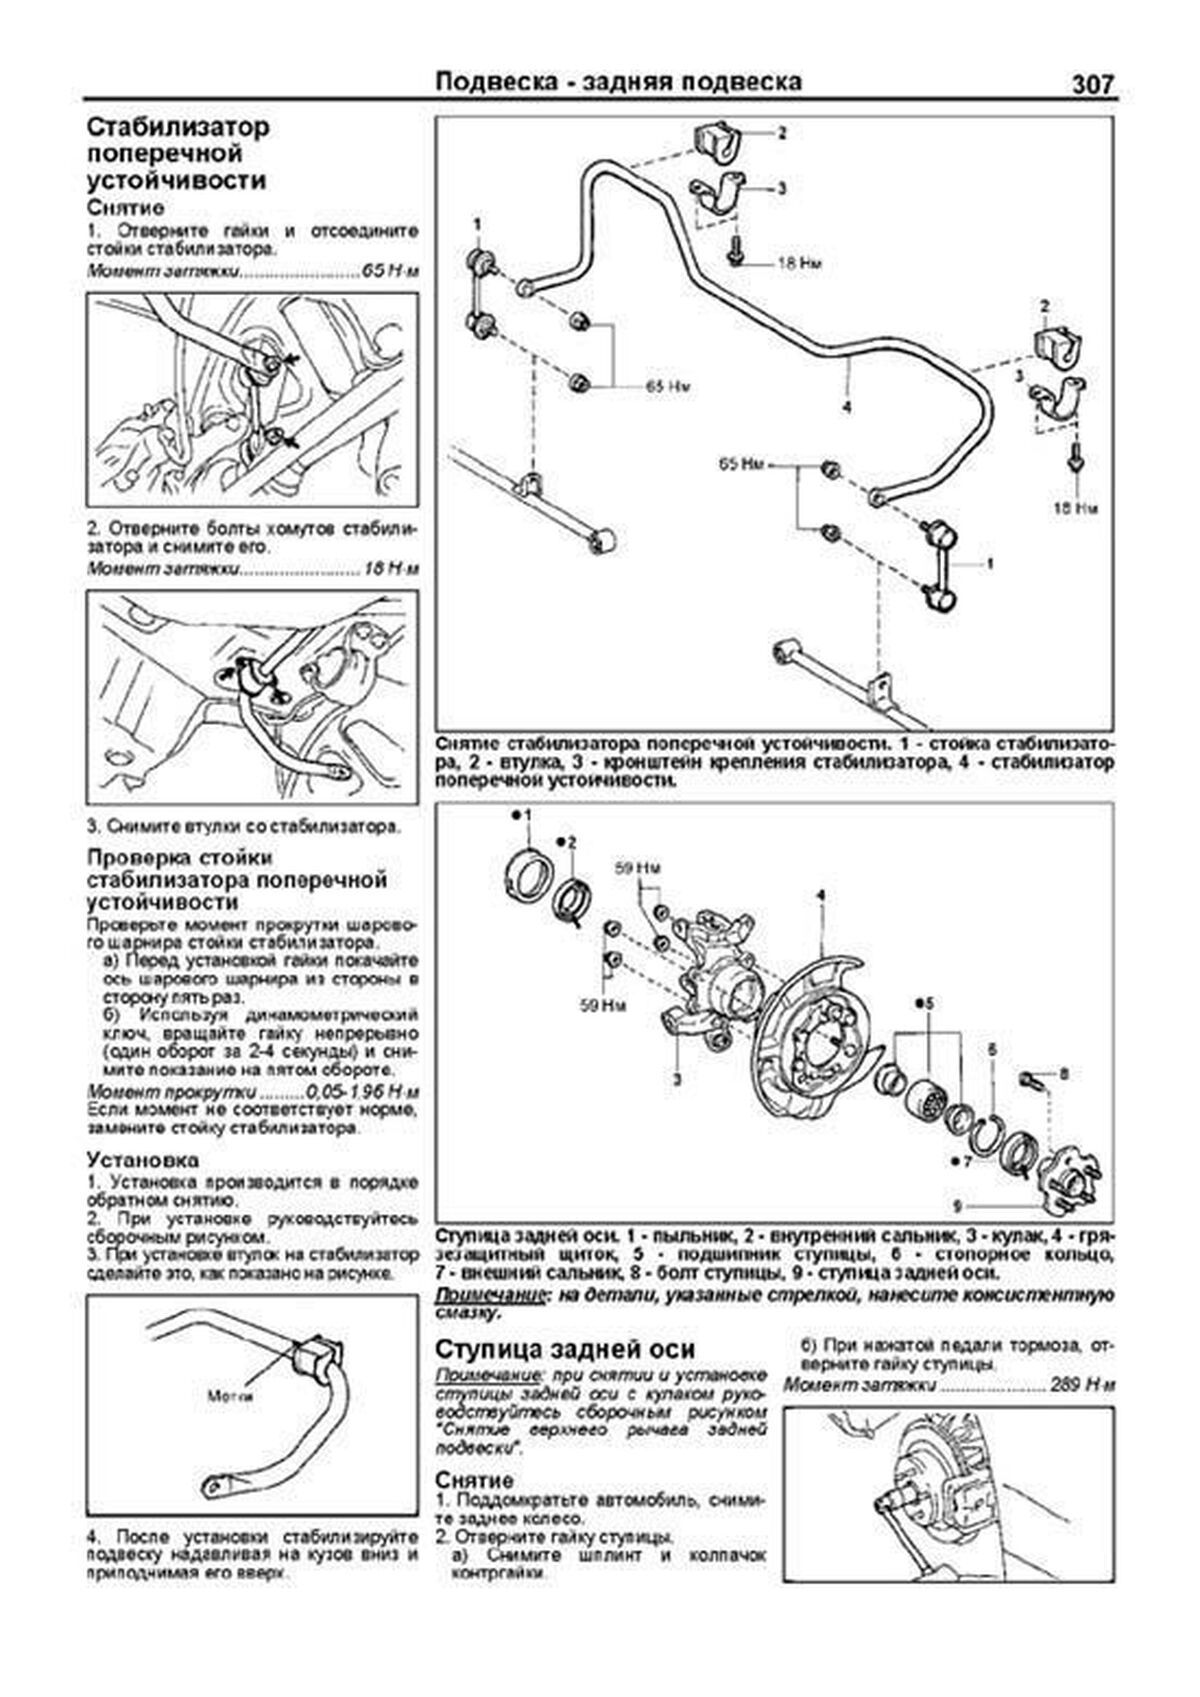 Книга: TOYOTA MARK II / CHASER / CRESTA 2WD и 4WD (б , д) 1996-2001 г.в., рем., экспл., то | Легион-Aвтодата